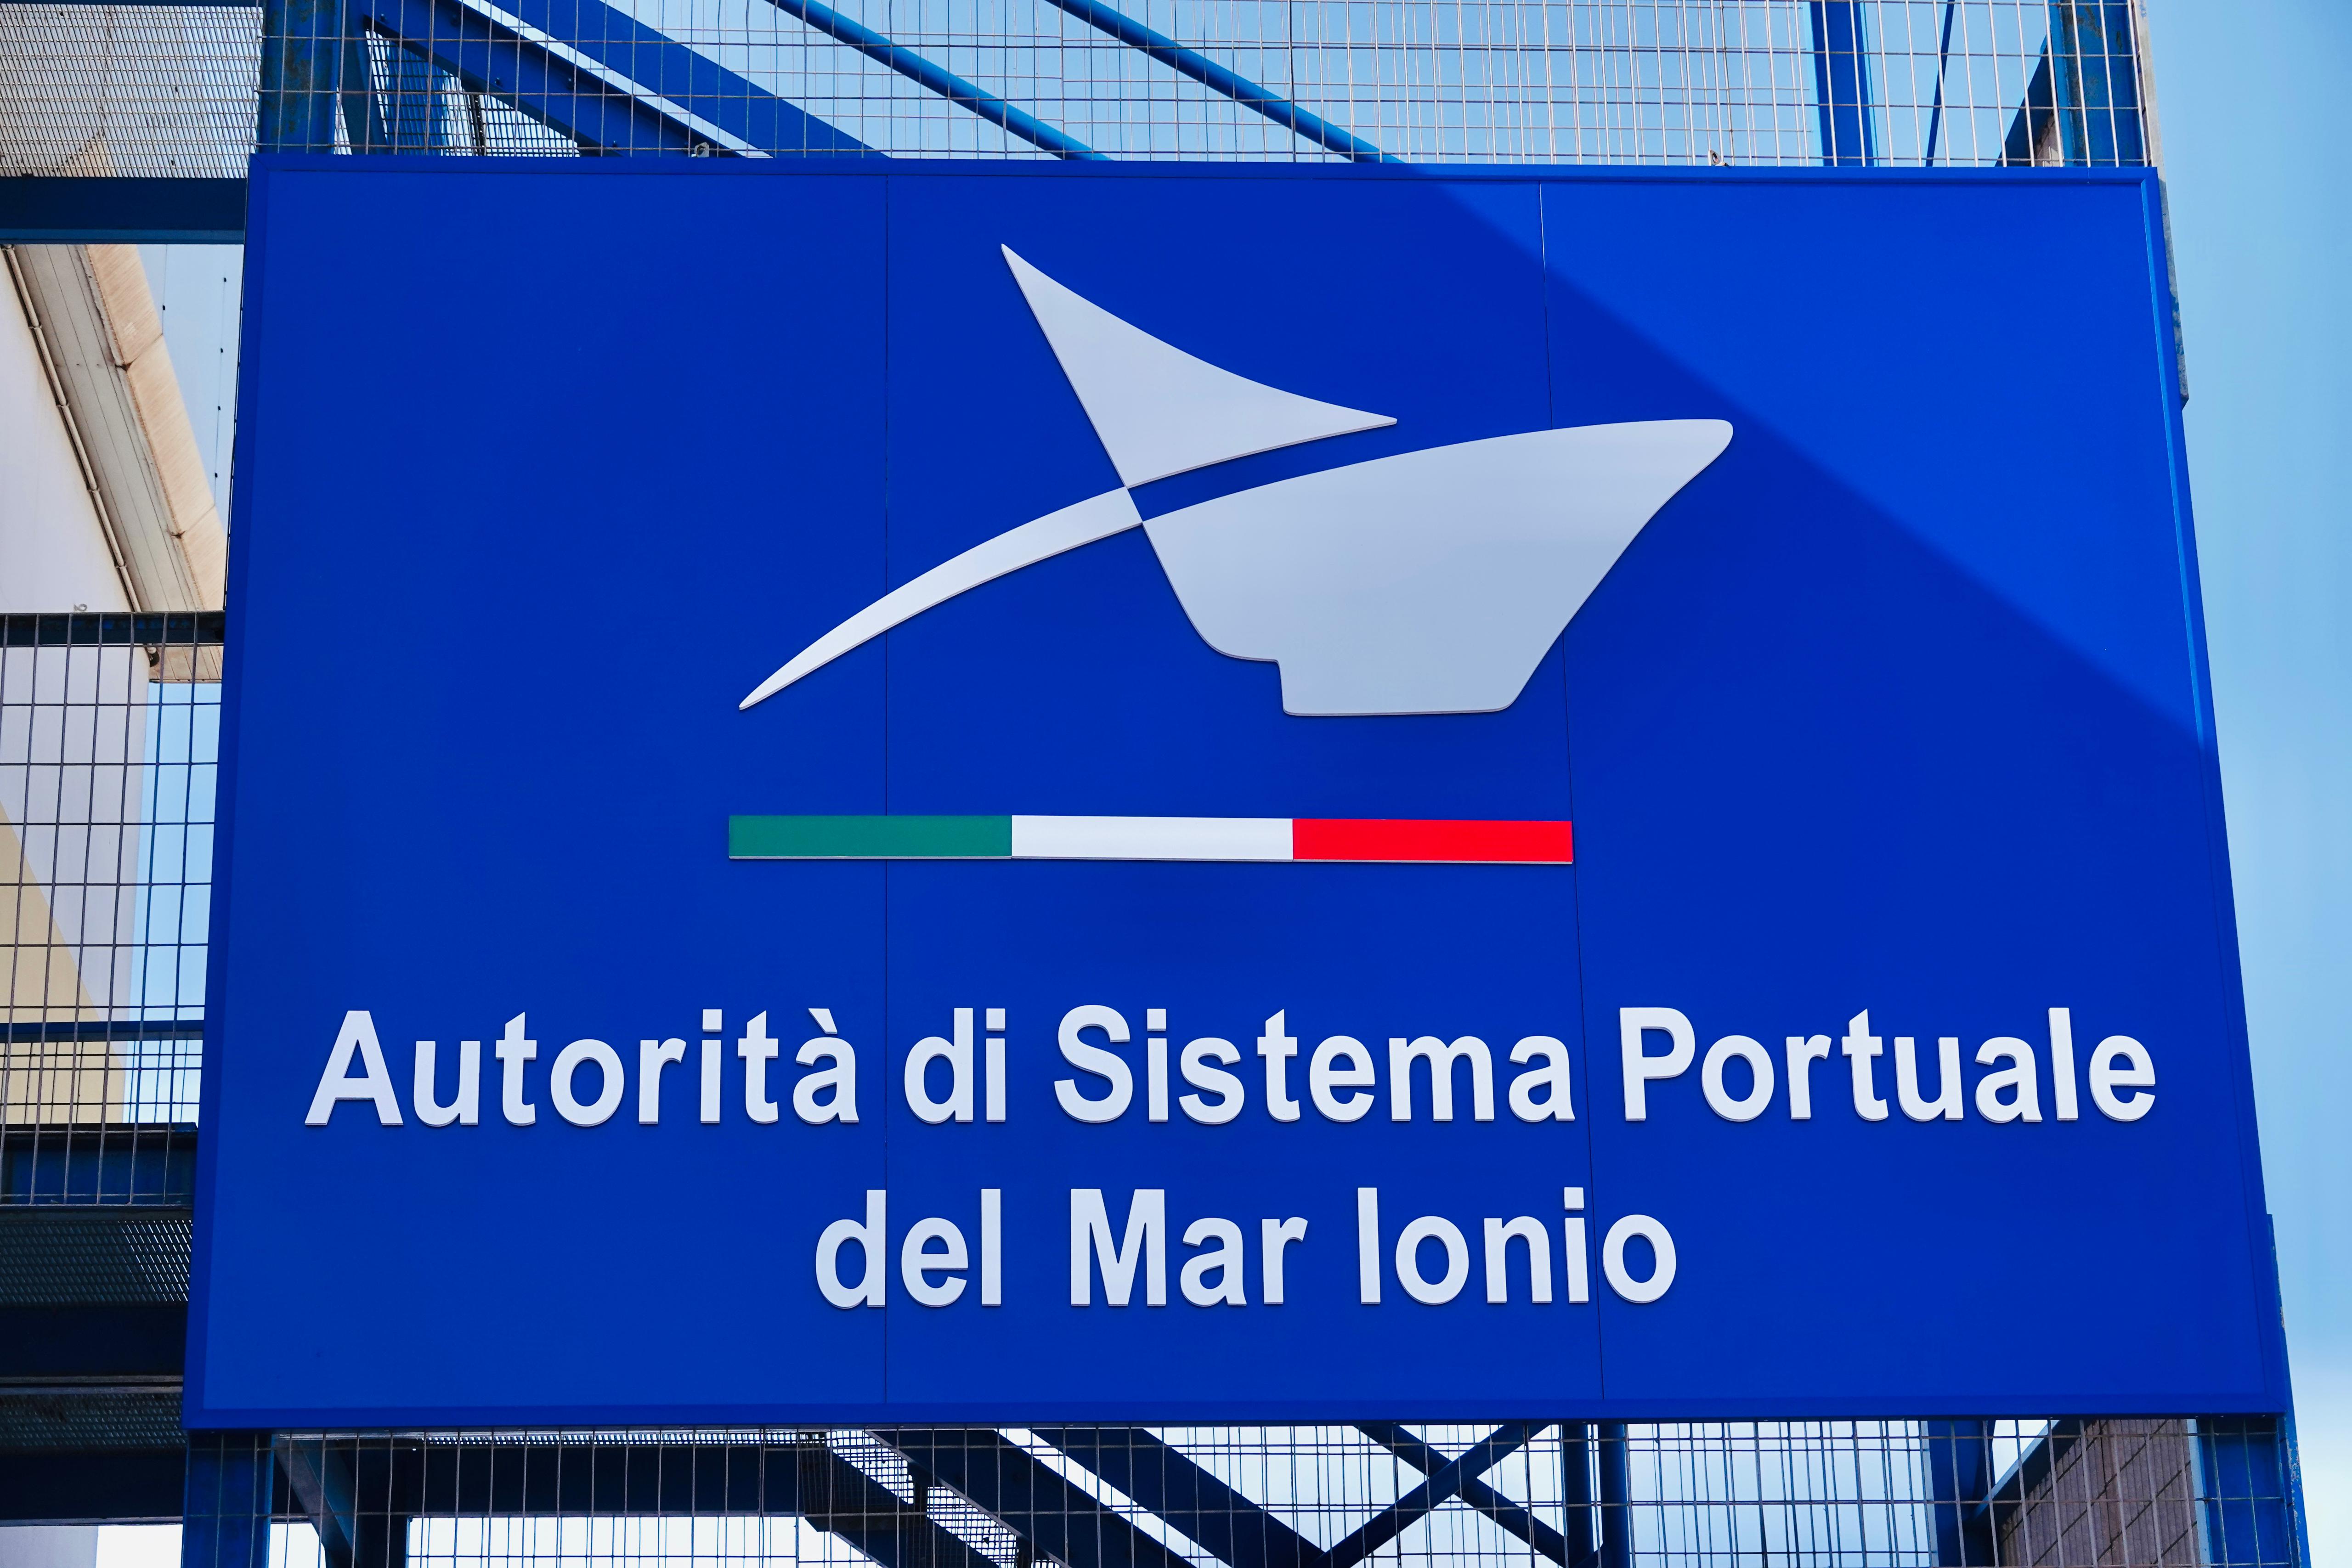 Galleria Lavoratori portuali di Taranto, oggi a Taranto la sottoscrizione del Protocollo d’Intesa tra Regione Puglia e Autorità di Sistema Portuale del Mar Ionio - Diapositiva 5 di 12